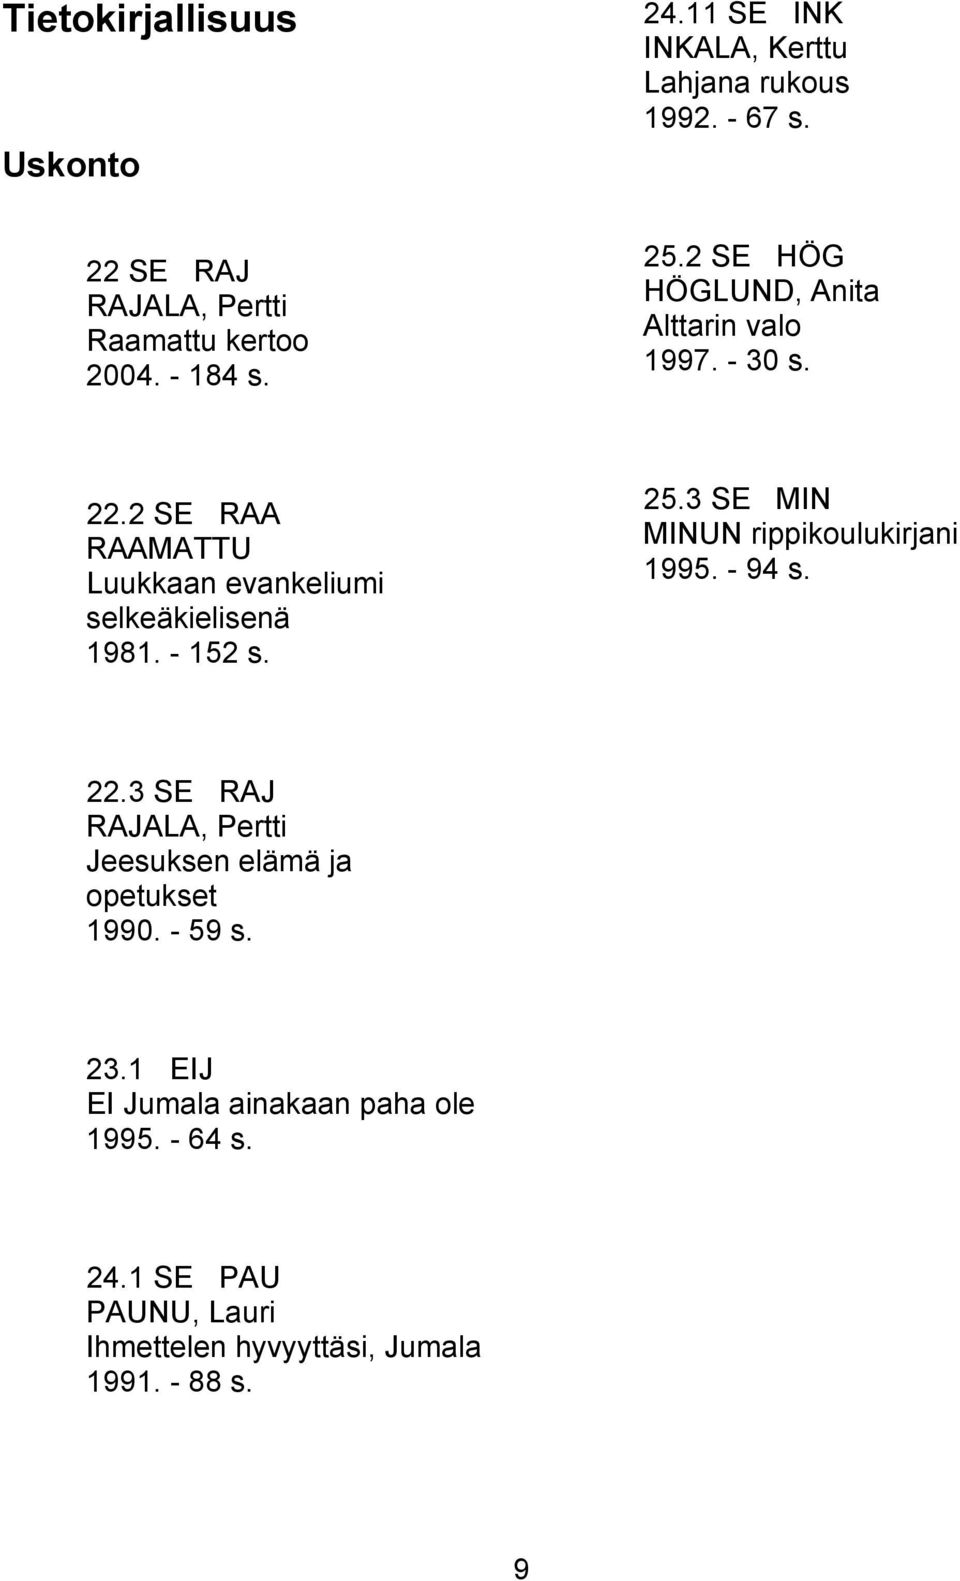 2 SE RAA RAAMATTU Luukkaan evankeliumi selkeäkielisenä 1981. - 152 s. 25.3 SE MIN MINUN rippikoulukirjani 1995. - 94 s.